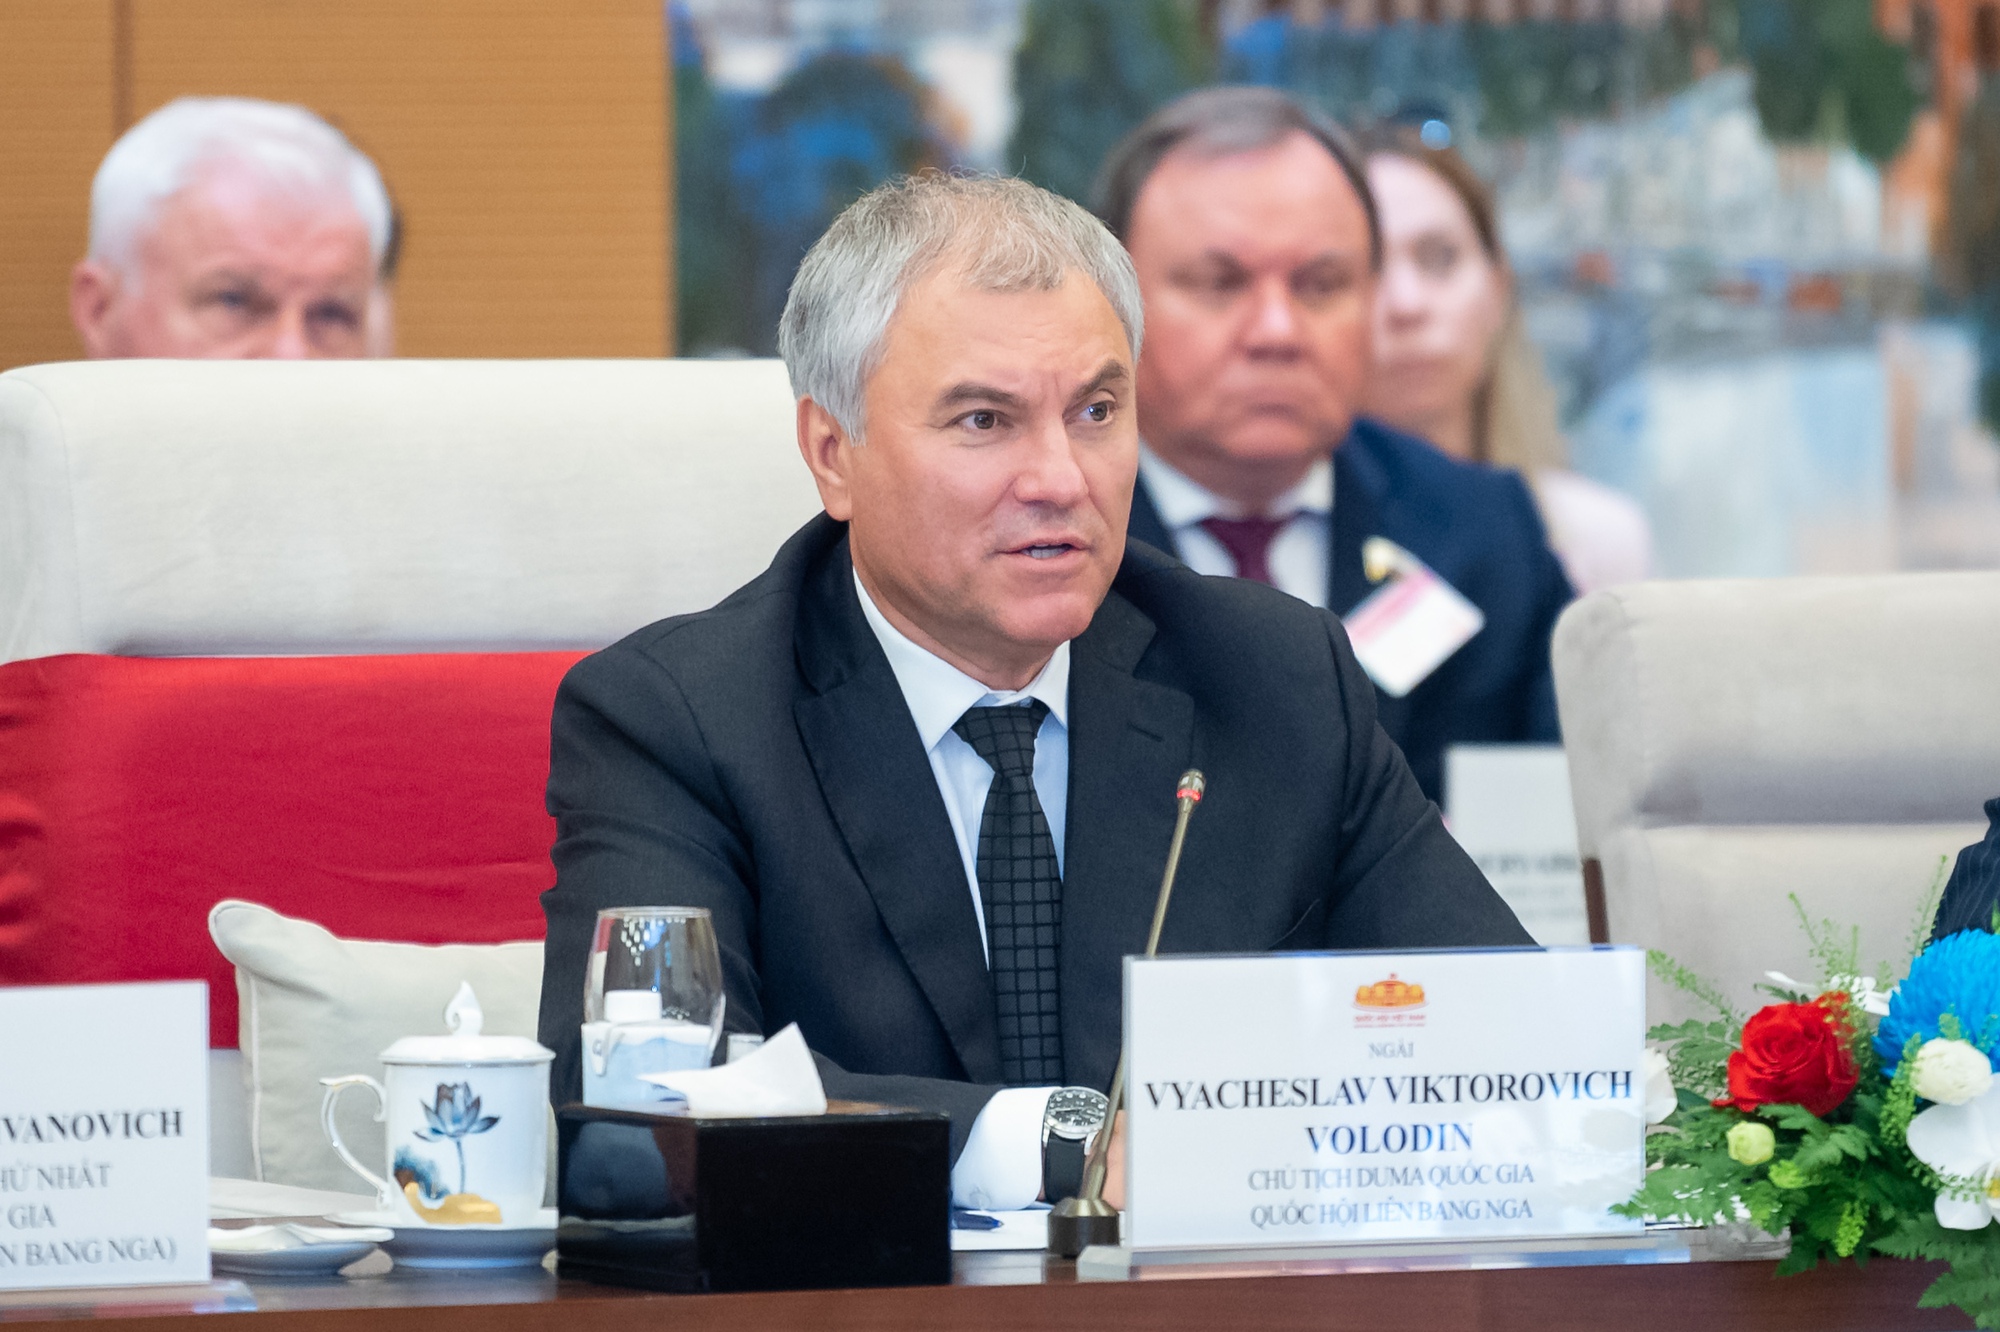 Chủ tịch Duma Quốc gia Quốc hội Liên bang Nga Vyacheslav Viktorovich Volodin: Quan hệ Việt Nam – Liên bang Nga đang phát triển tốt đẹp - Ảnh: Quochoi.vn